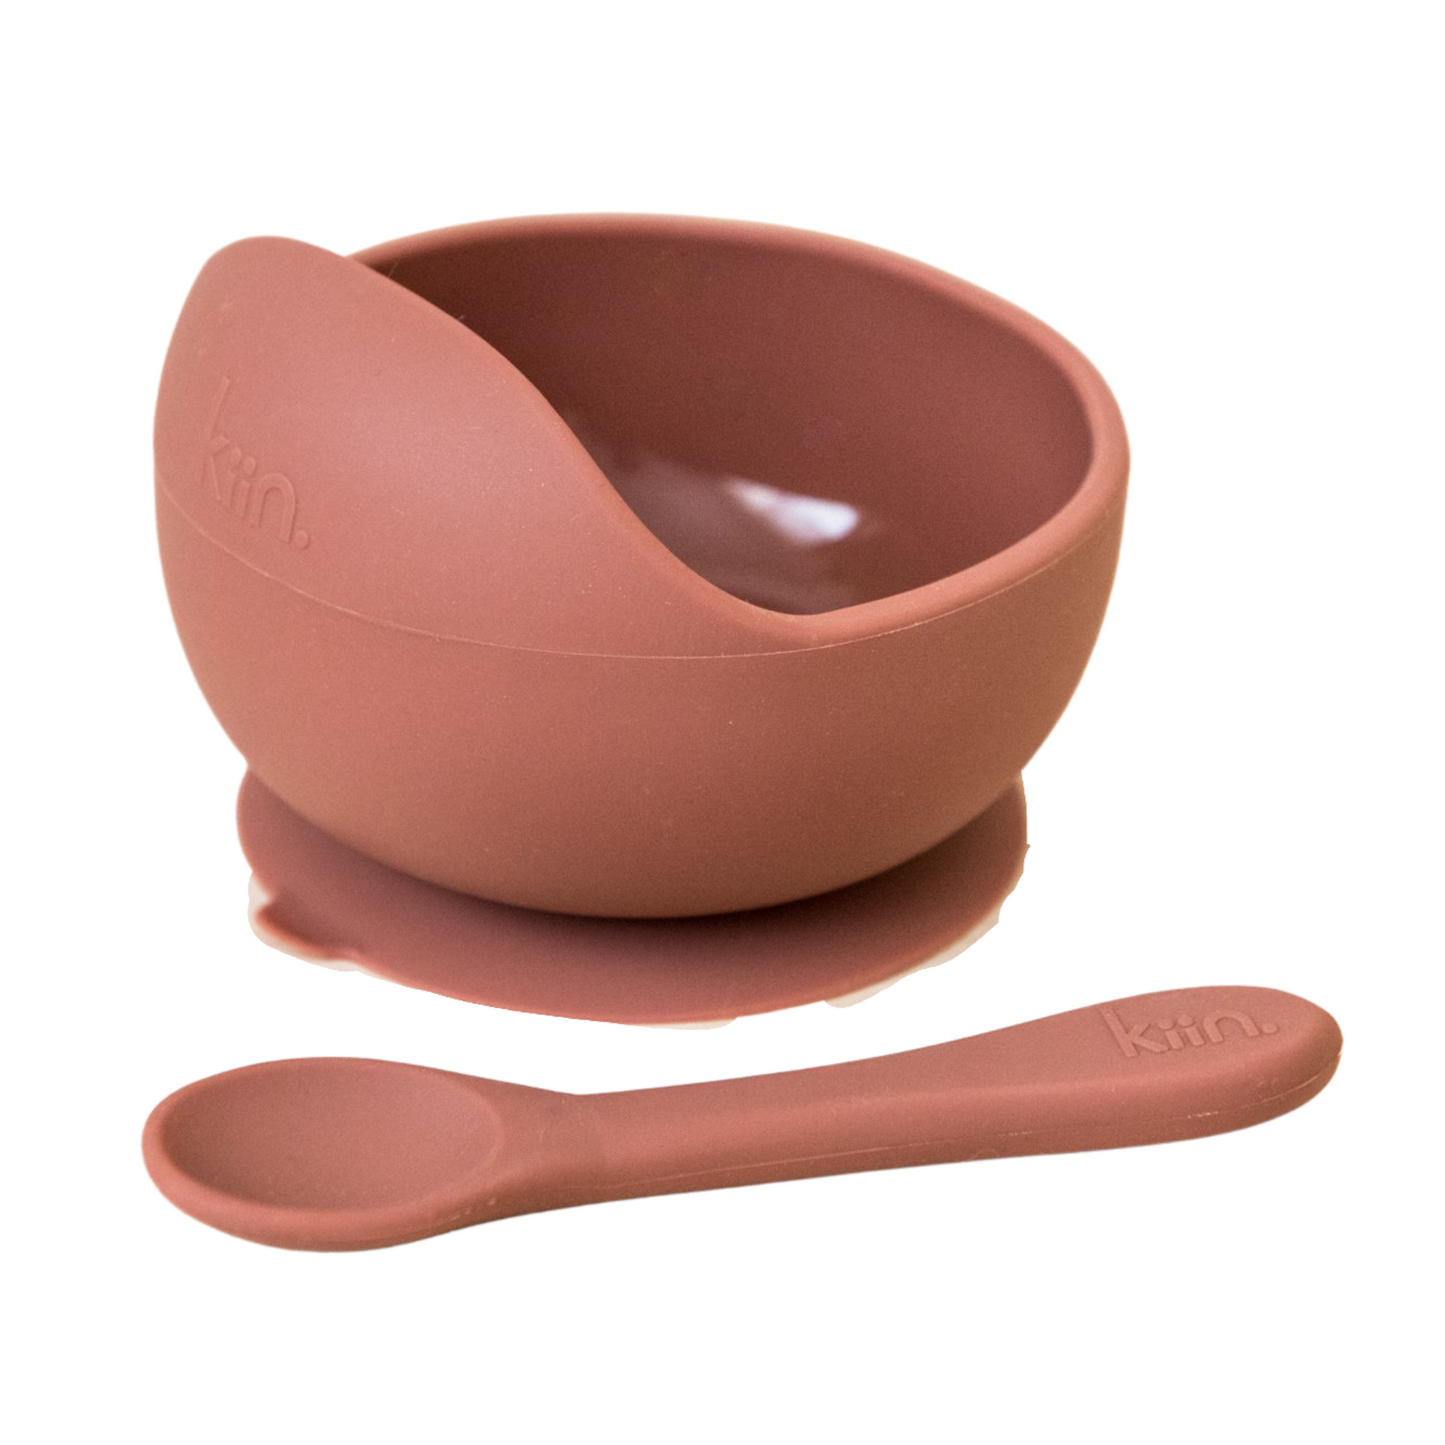 Kiin Silicone Bowl + Spoon Set